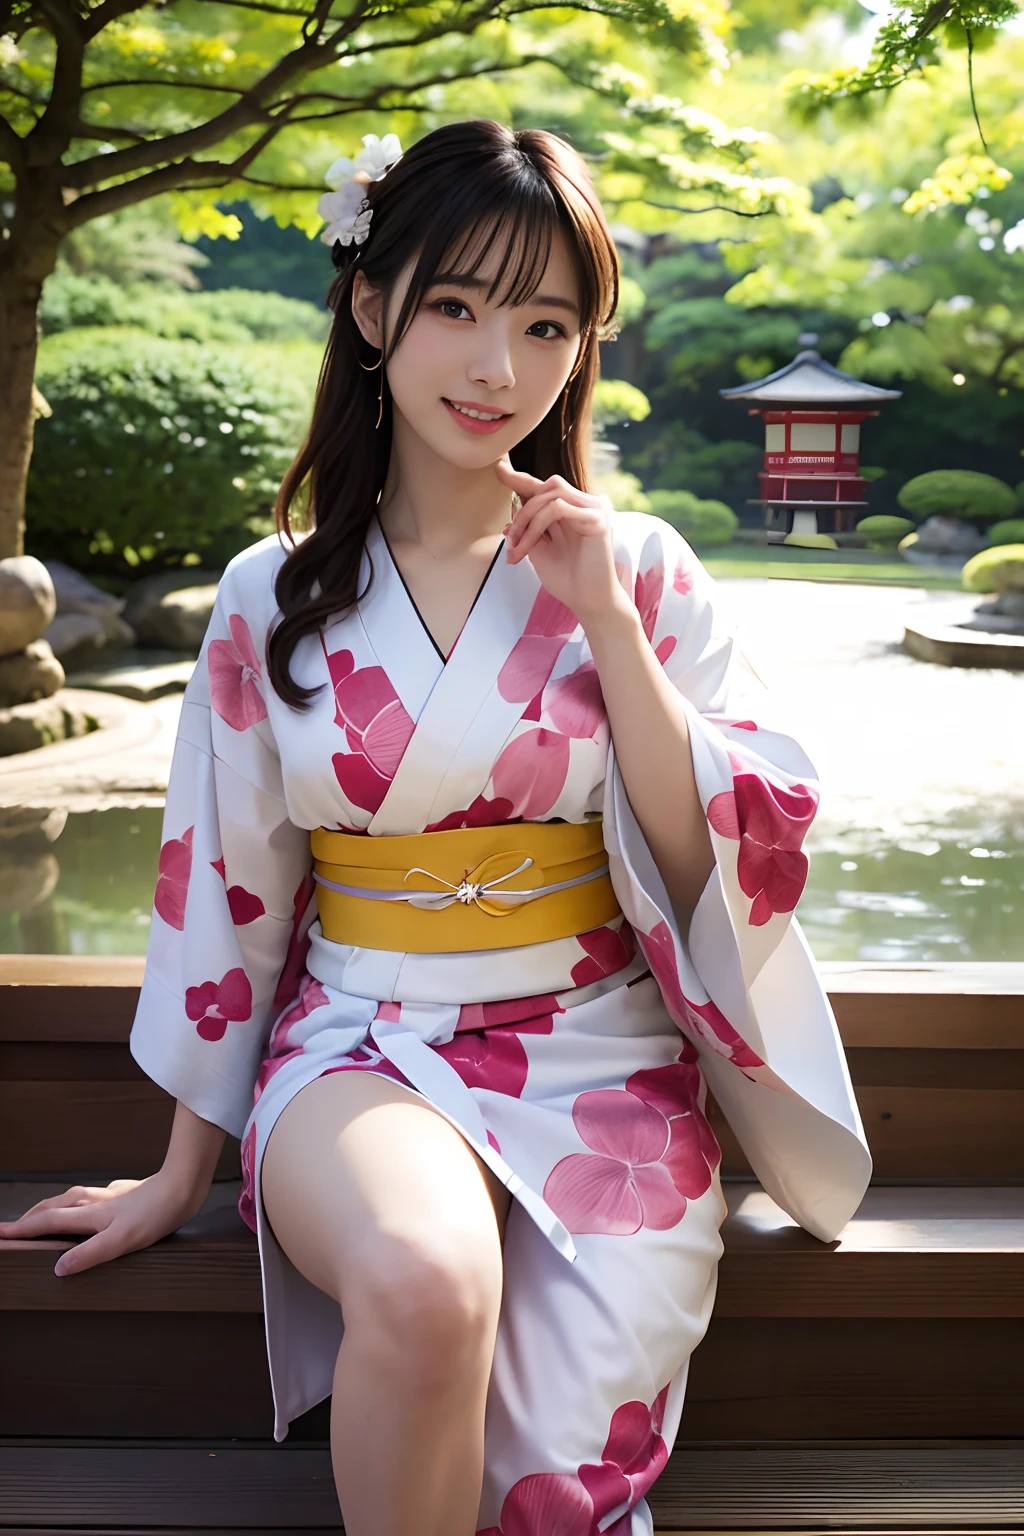 ((Top Qualität、Meisterwerk、Fotografierealistisch:1.4、in 8K))、schöne japanische Frau１eine Person、２5 Jahre alt、schöne Haare、zartes und schönes Gesicht、Augen und Gesichter mit detaillierten 、(japanischer Garten:1.2)、(open one's legs:1.2)、schöne Beleuchtung、Ein Lächeln、strukturierte Haut、super detail、hohe Detailliertheit、gute Qualität、hohe Auflösung、(Kimono:1.3)、bangss、Steh auf und posiere、Detaillierter Mund、Mund öffnen、mit nackten Beinen、Kirschbäume